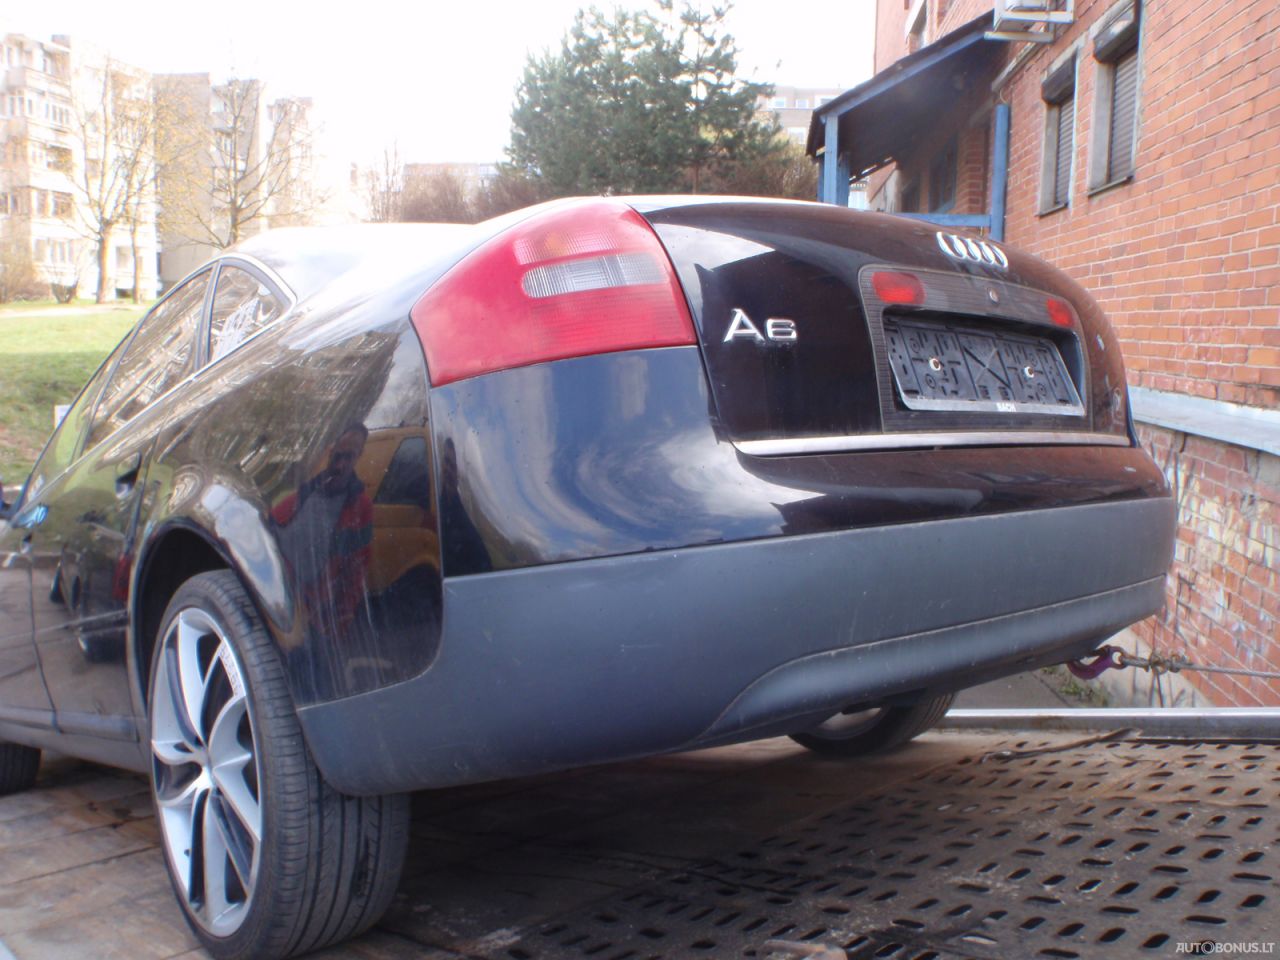 Audi A6, Sedanas